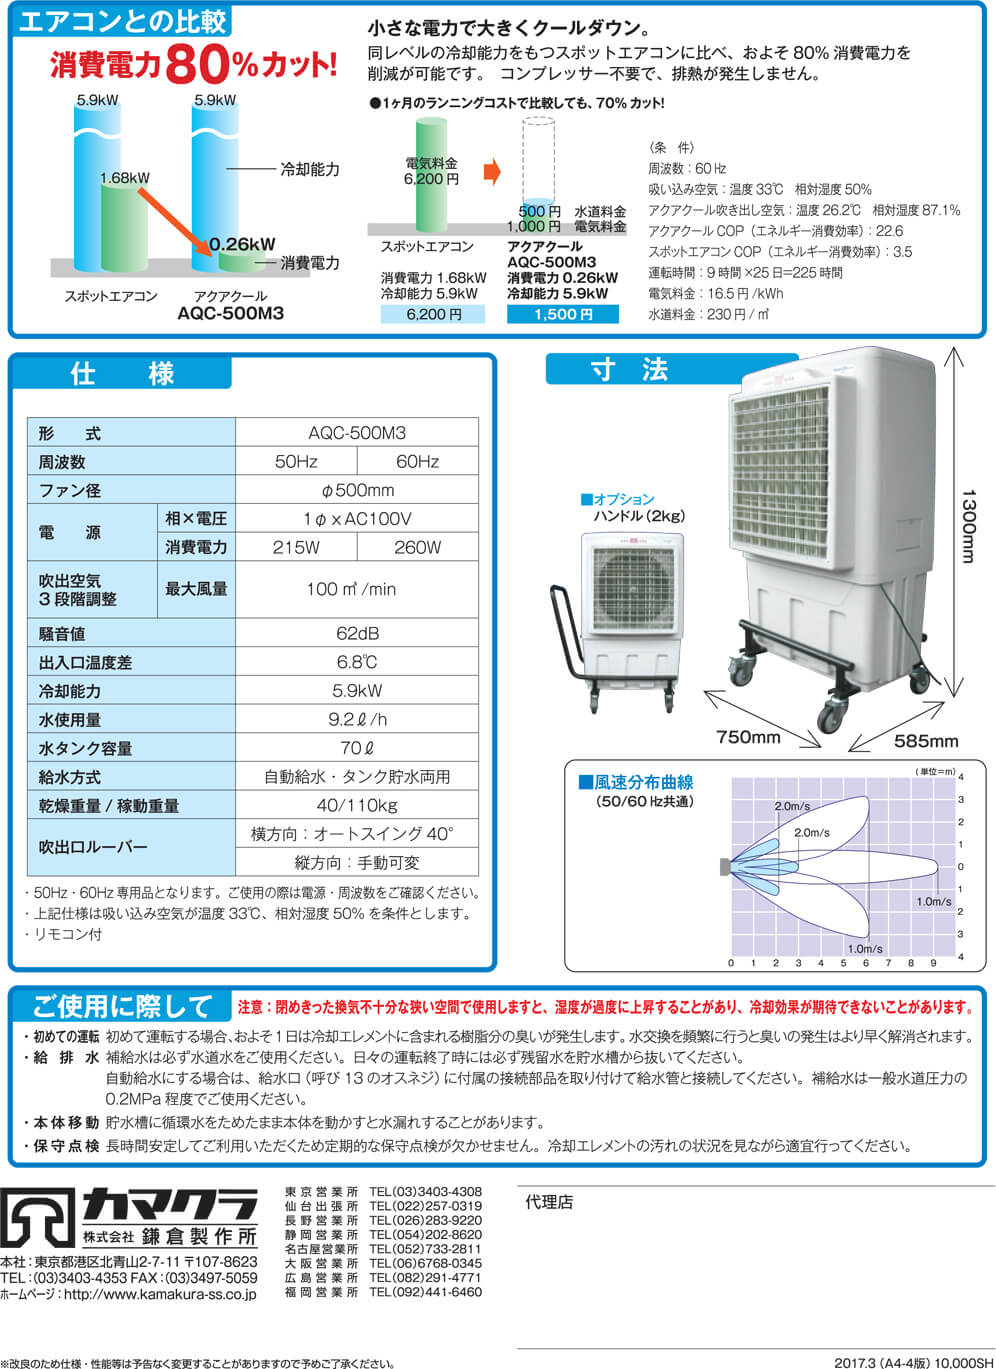 鎌倉製作所 アクアクールミニ 冷風扇 気化放熱式涼風扇 50Hz 東日本用 